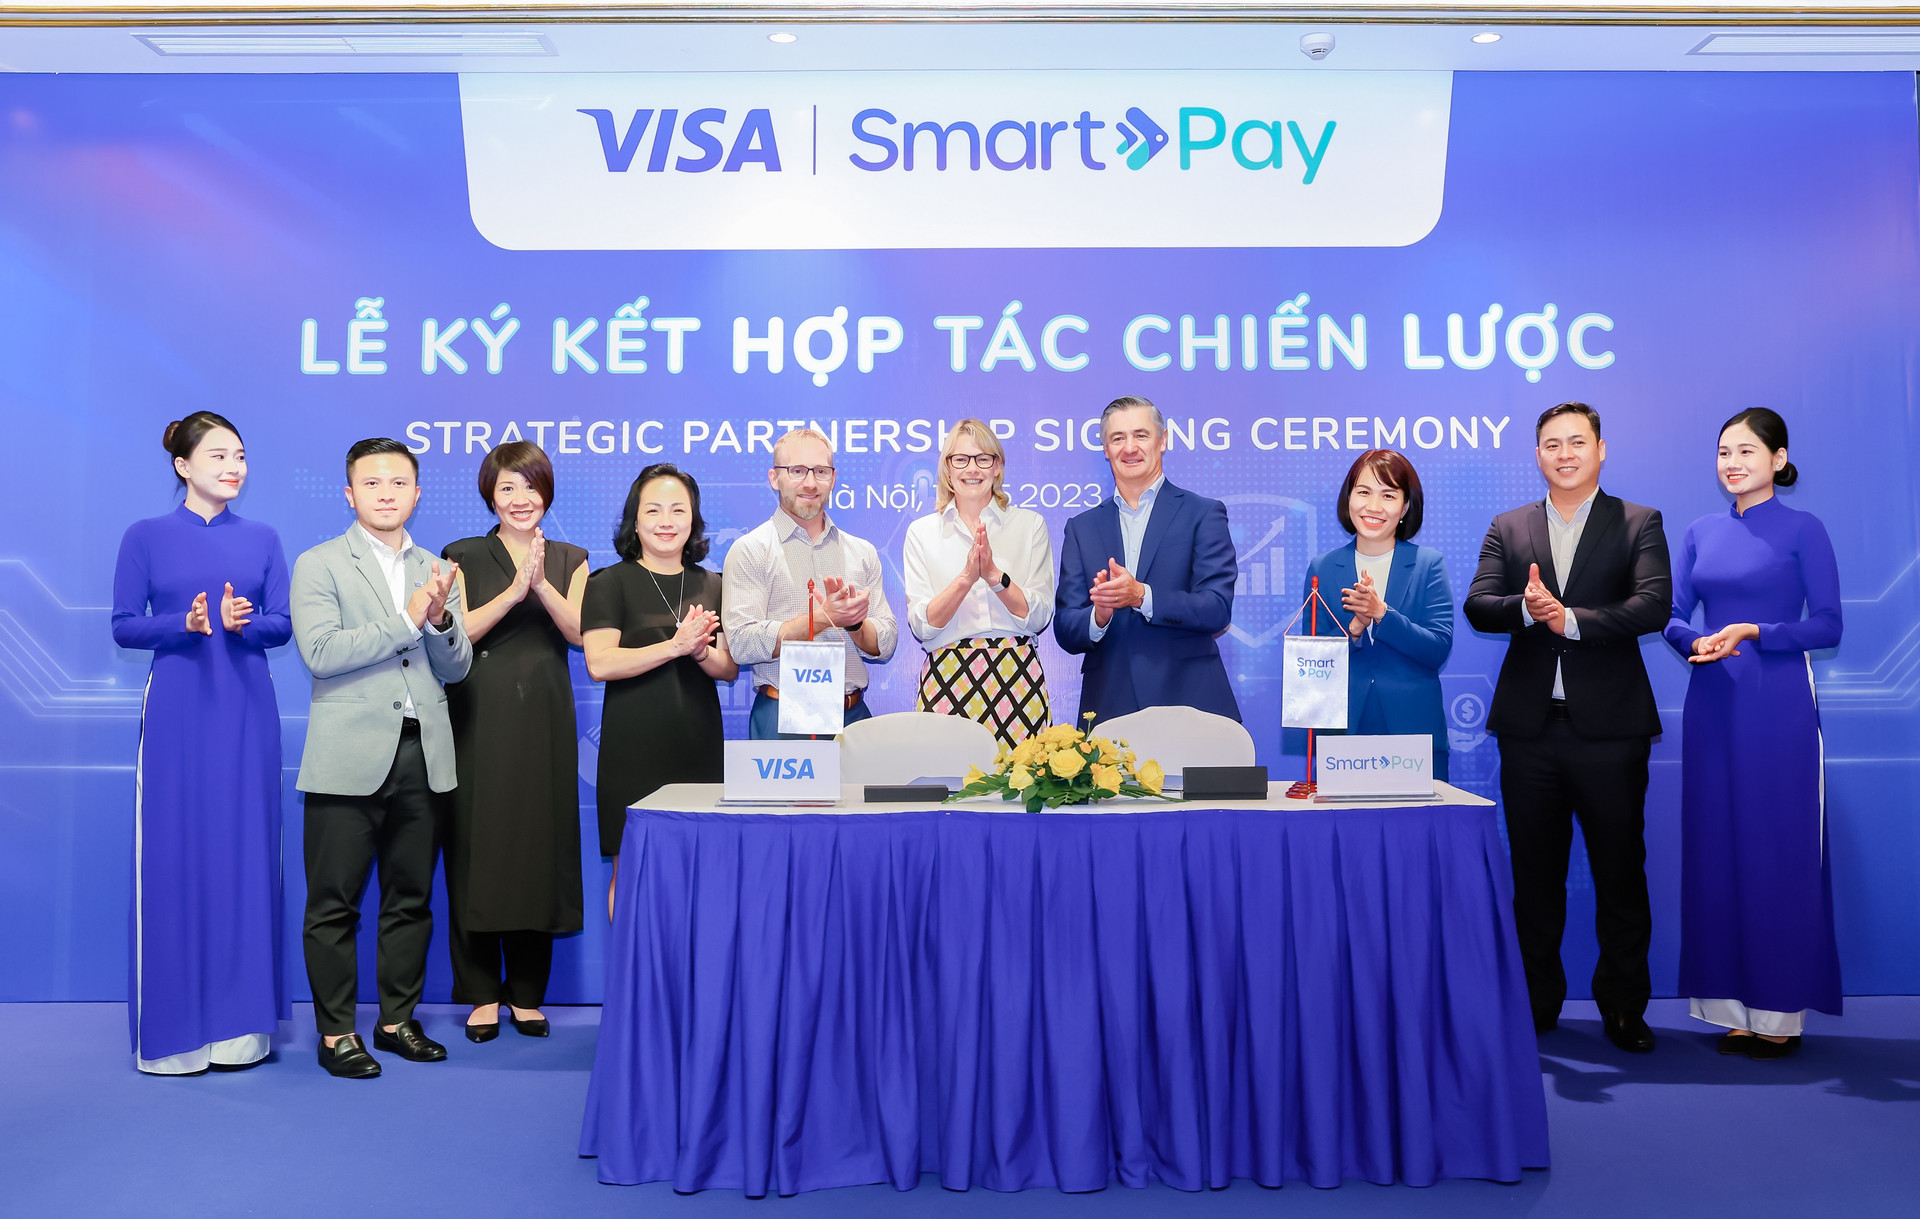 Tin vui cho doanh nghiệp nhỏ và SME Việt Nam: Visa bắt tay với doanh nghiệp fintech có 40 triệu người dùng để hỗ trợ giải pháp thanh toán số - Ảnh 1.